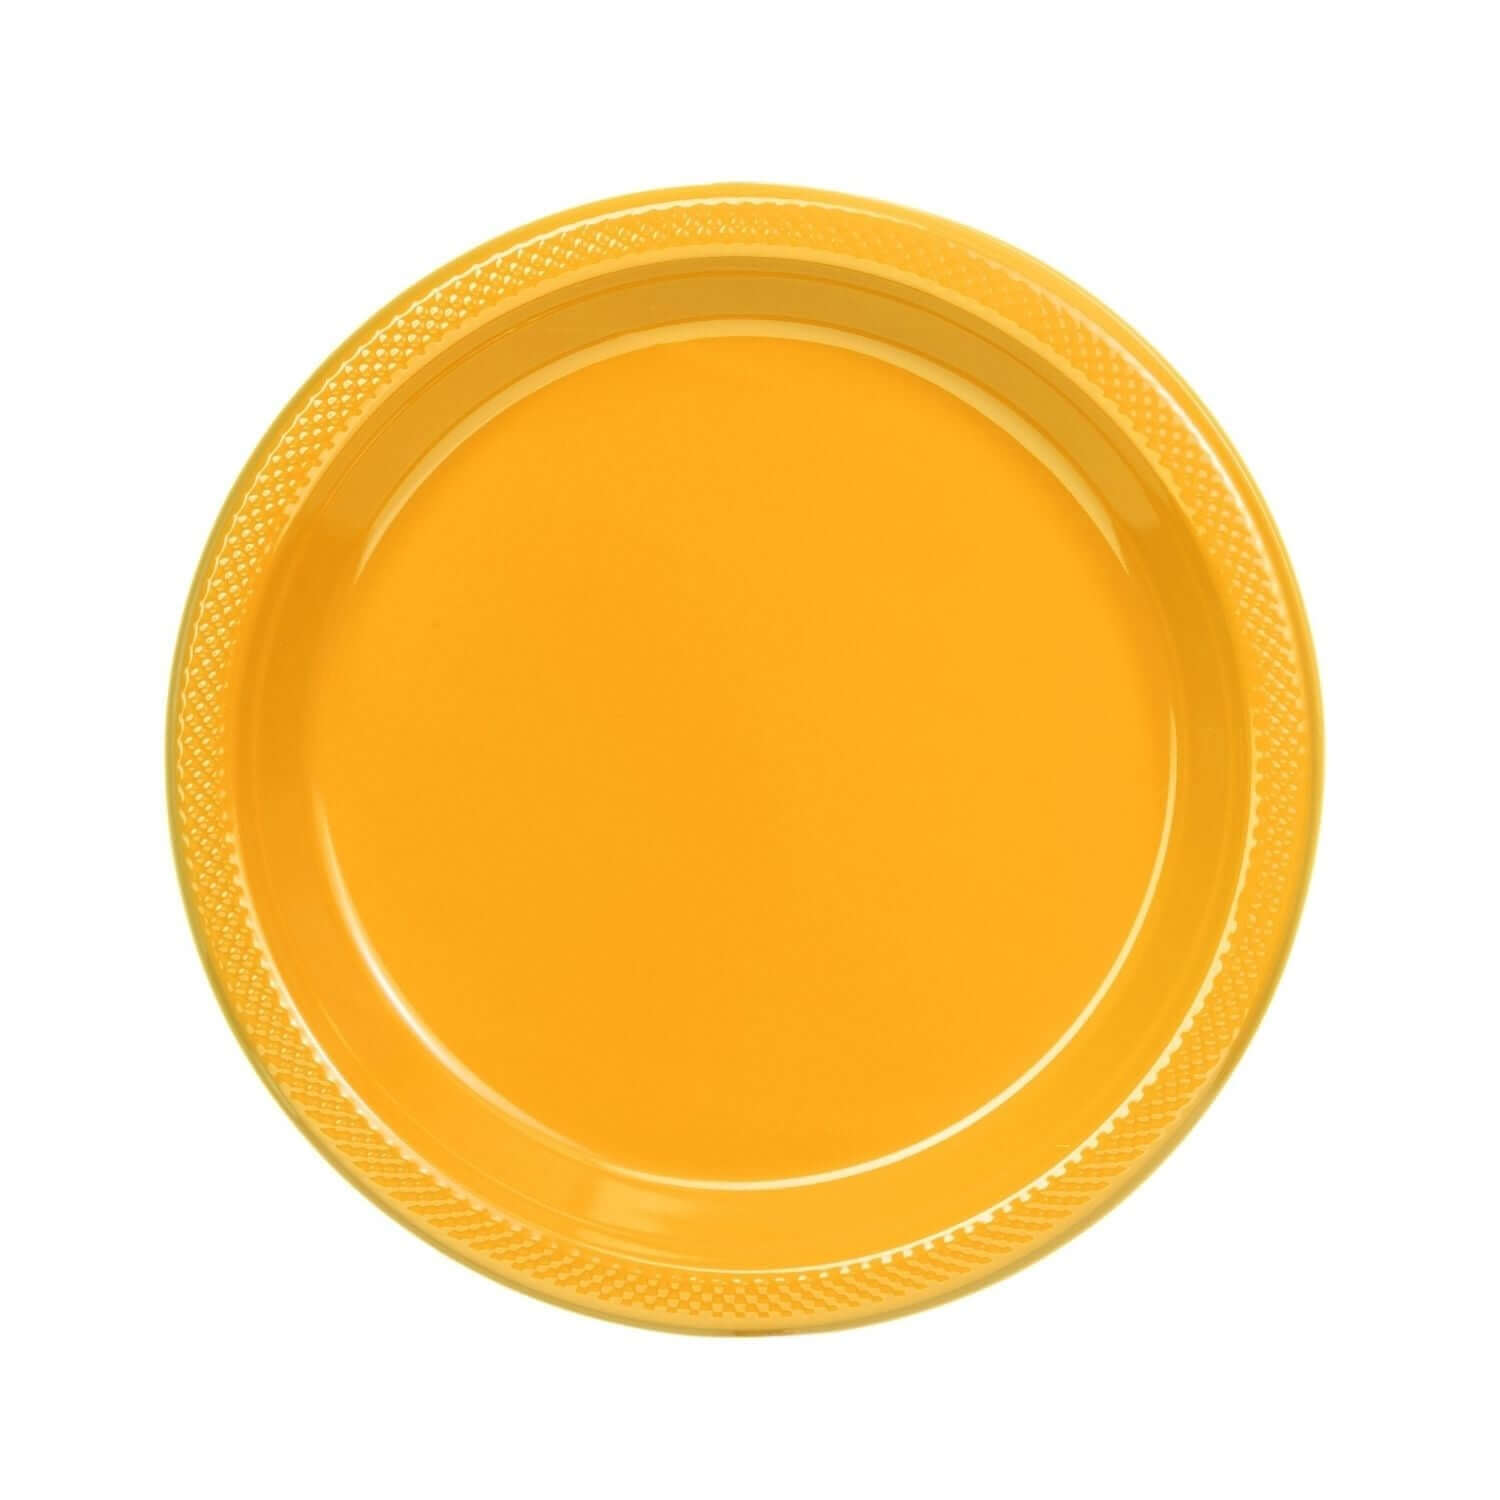 9" | Yellow Plastic Plates | 600 Count - Yom Tov Settings